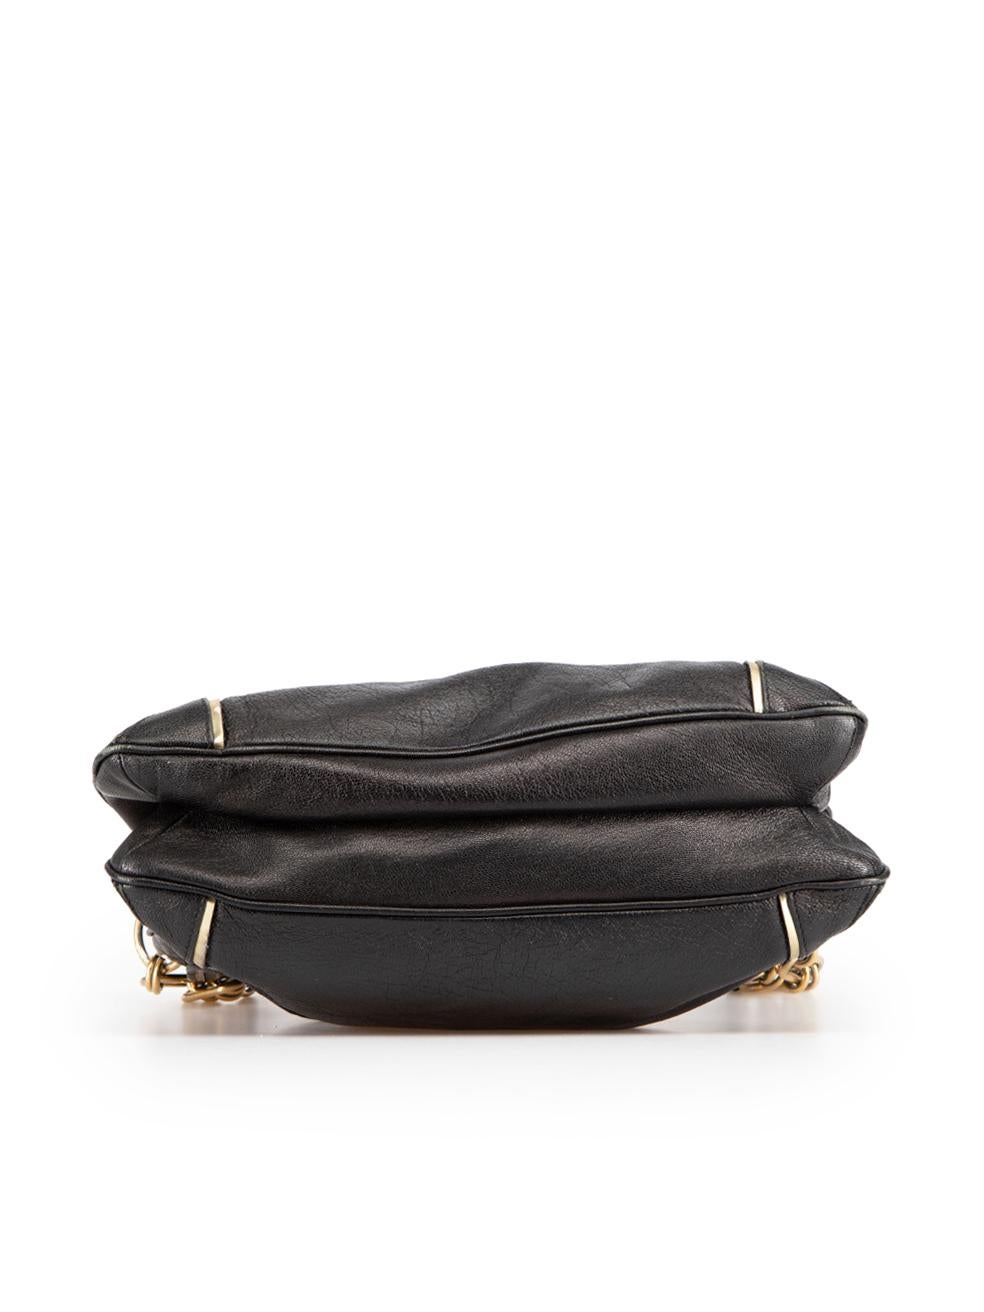 Women's Anya Hindmarch Black Leather Shoulder Bag For Sale